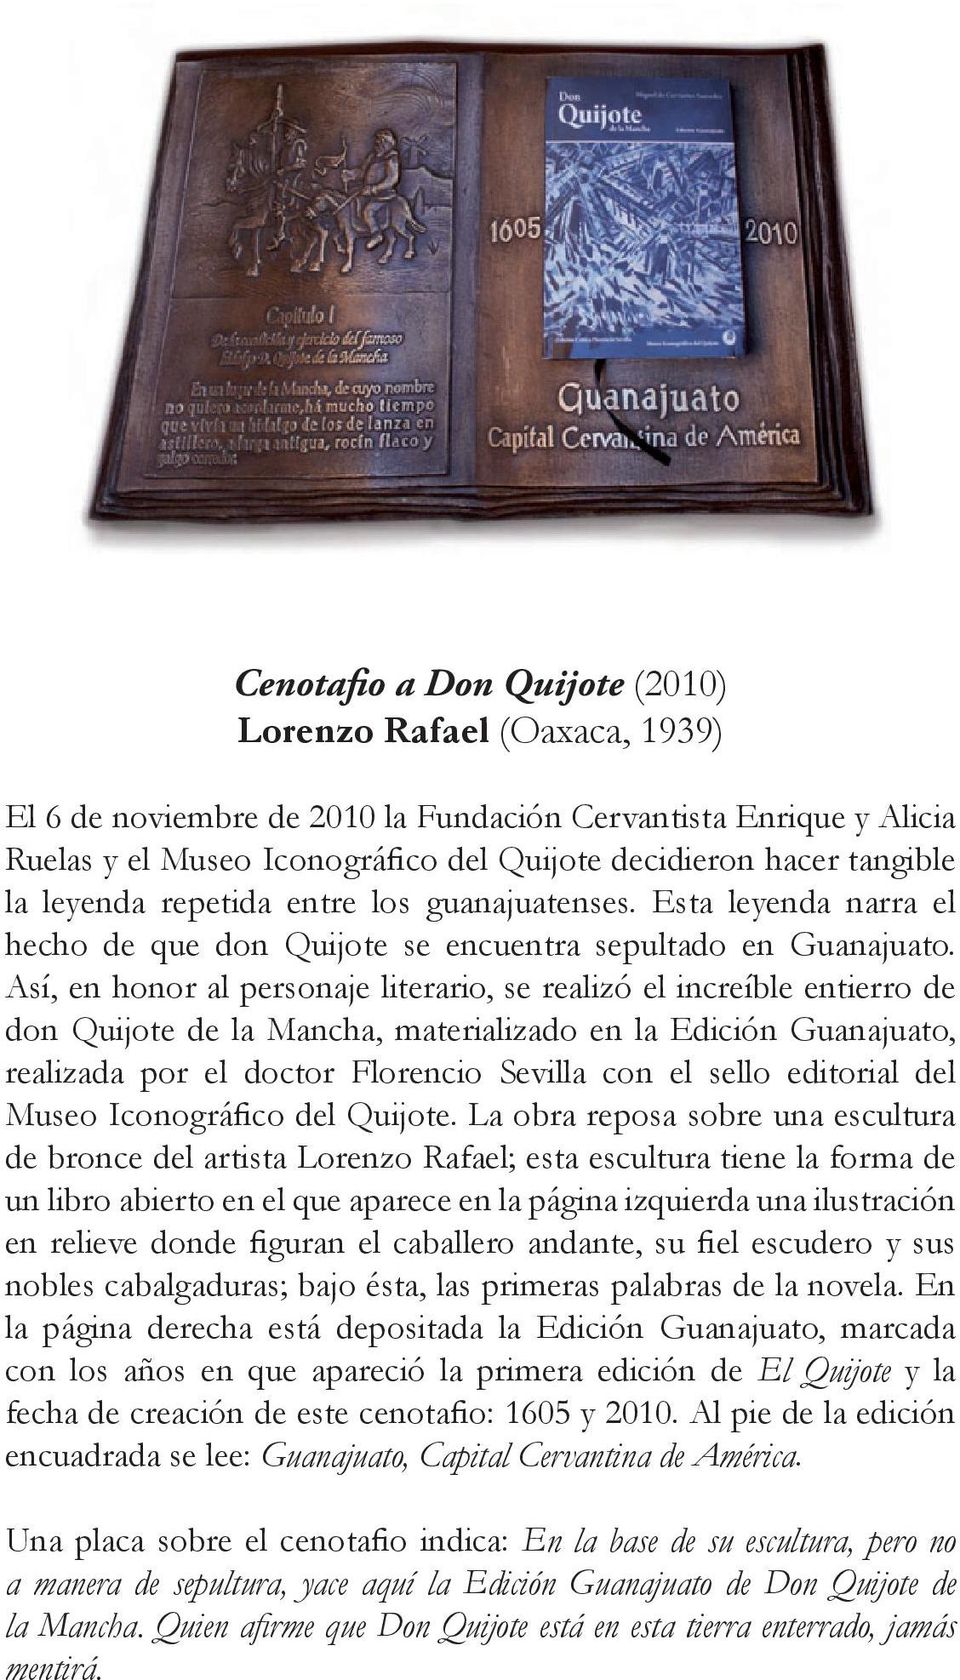 Así, en honor al personaje literario, se realizó el increíble entierro de don Quijote de la Mancha, materializado en la Edición Guanajuato, realizada por el doctor Florencio Sevilla con el sello